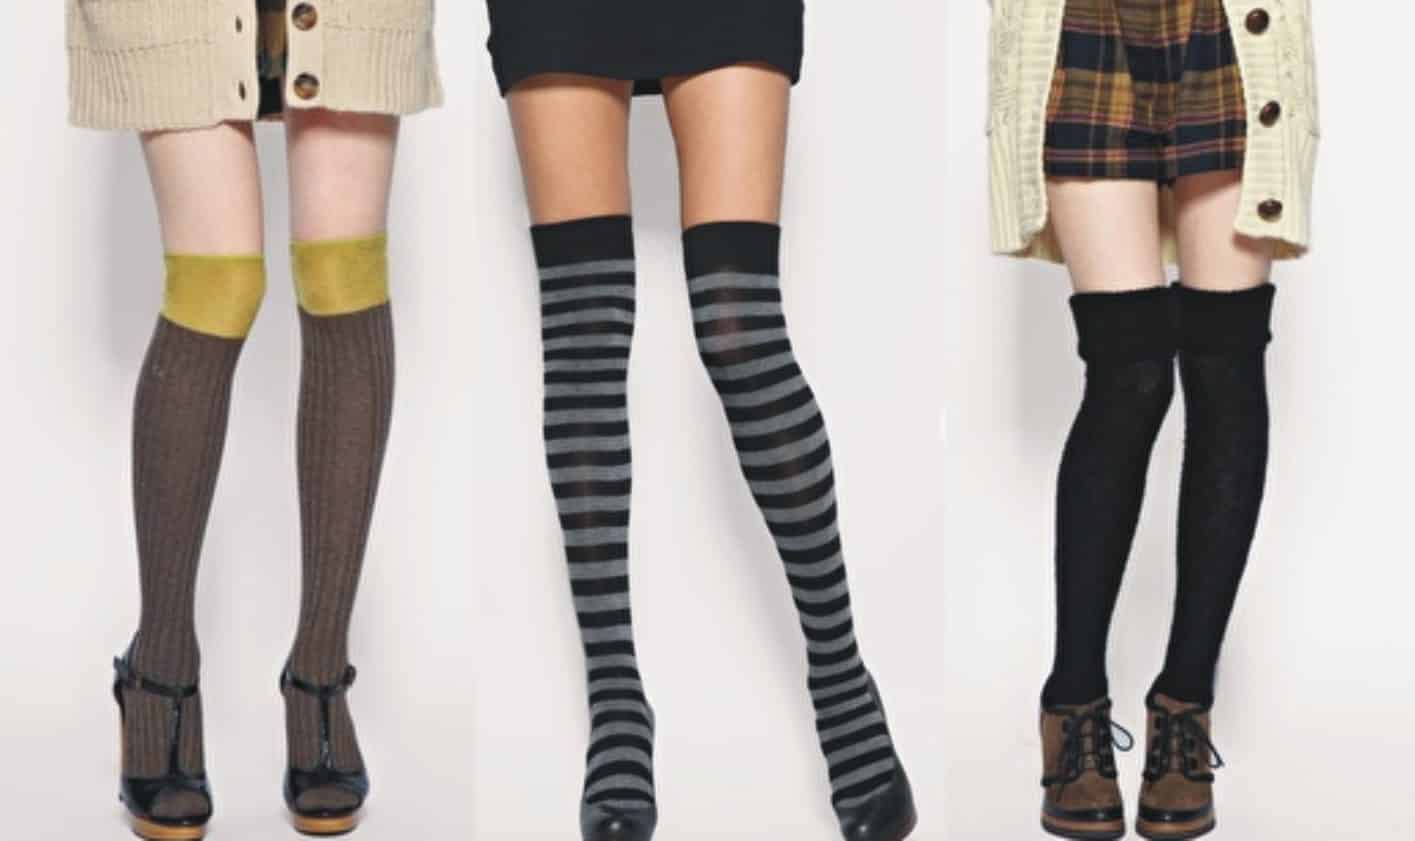 Meias - Dicas de como compor o look usando as meias à mostra